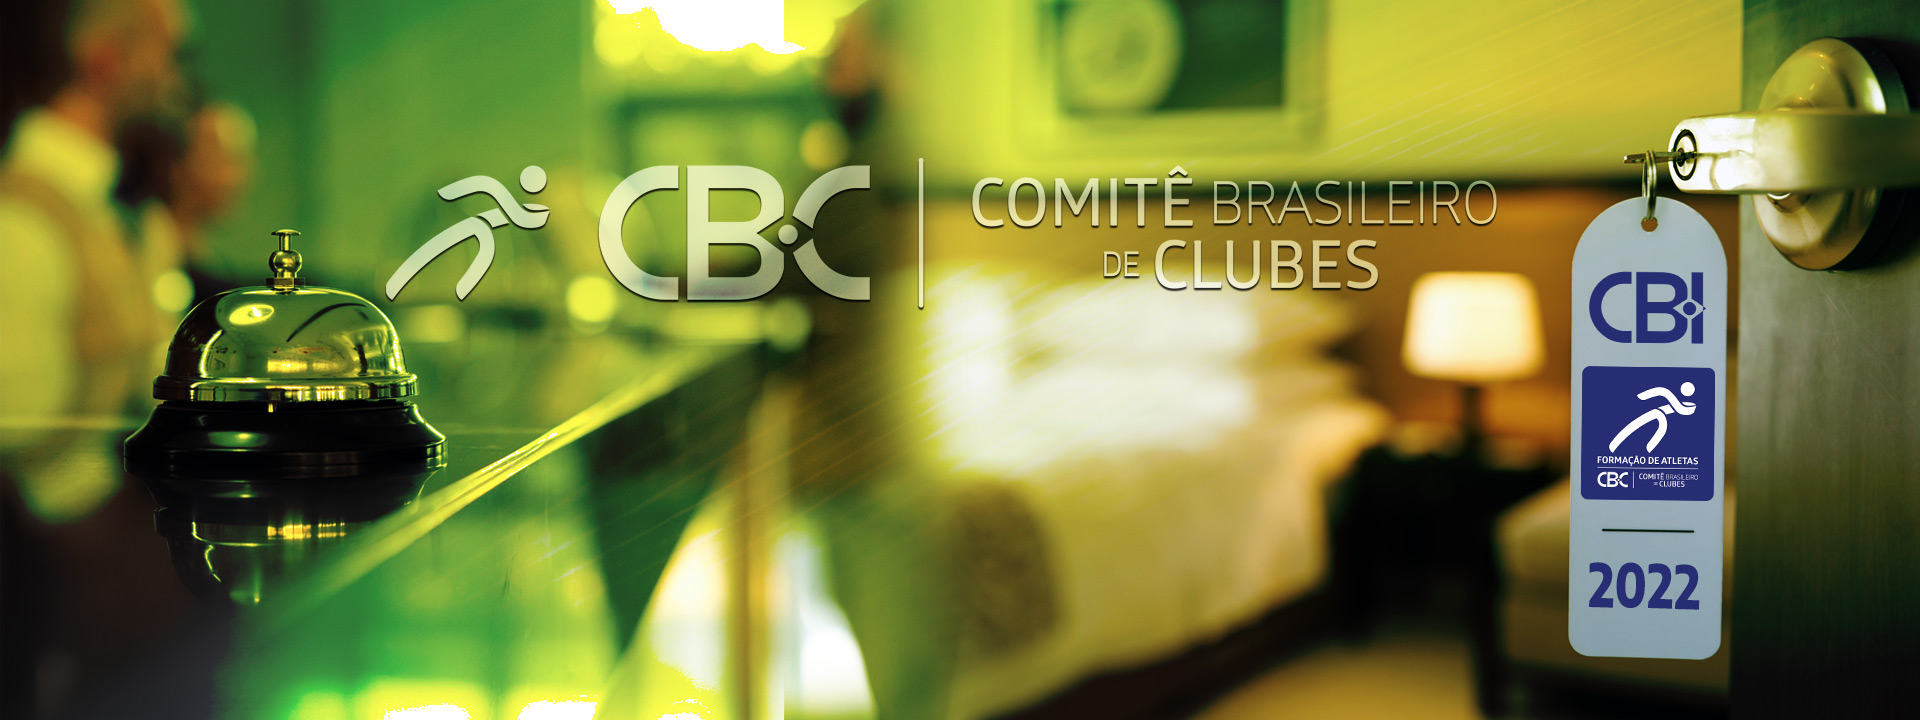 Comitê Brasileiro de Clubes-CBC fecha Acordo Corporativo de Desconto com Rede Hoteleira concedendo tarifas reduzidas para Clubes integrados